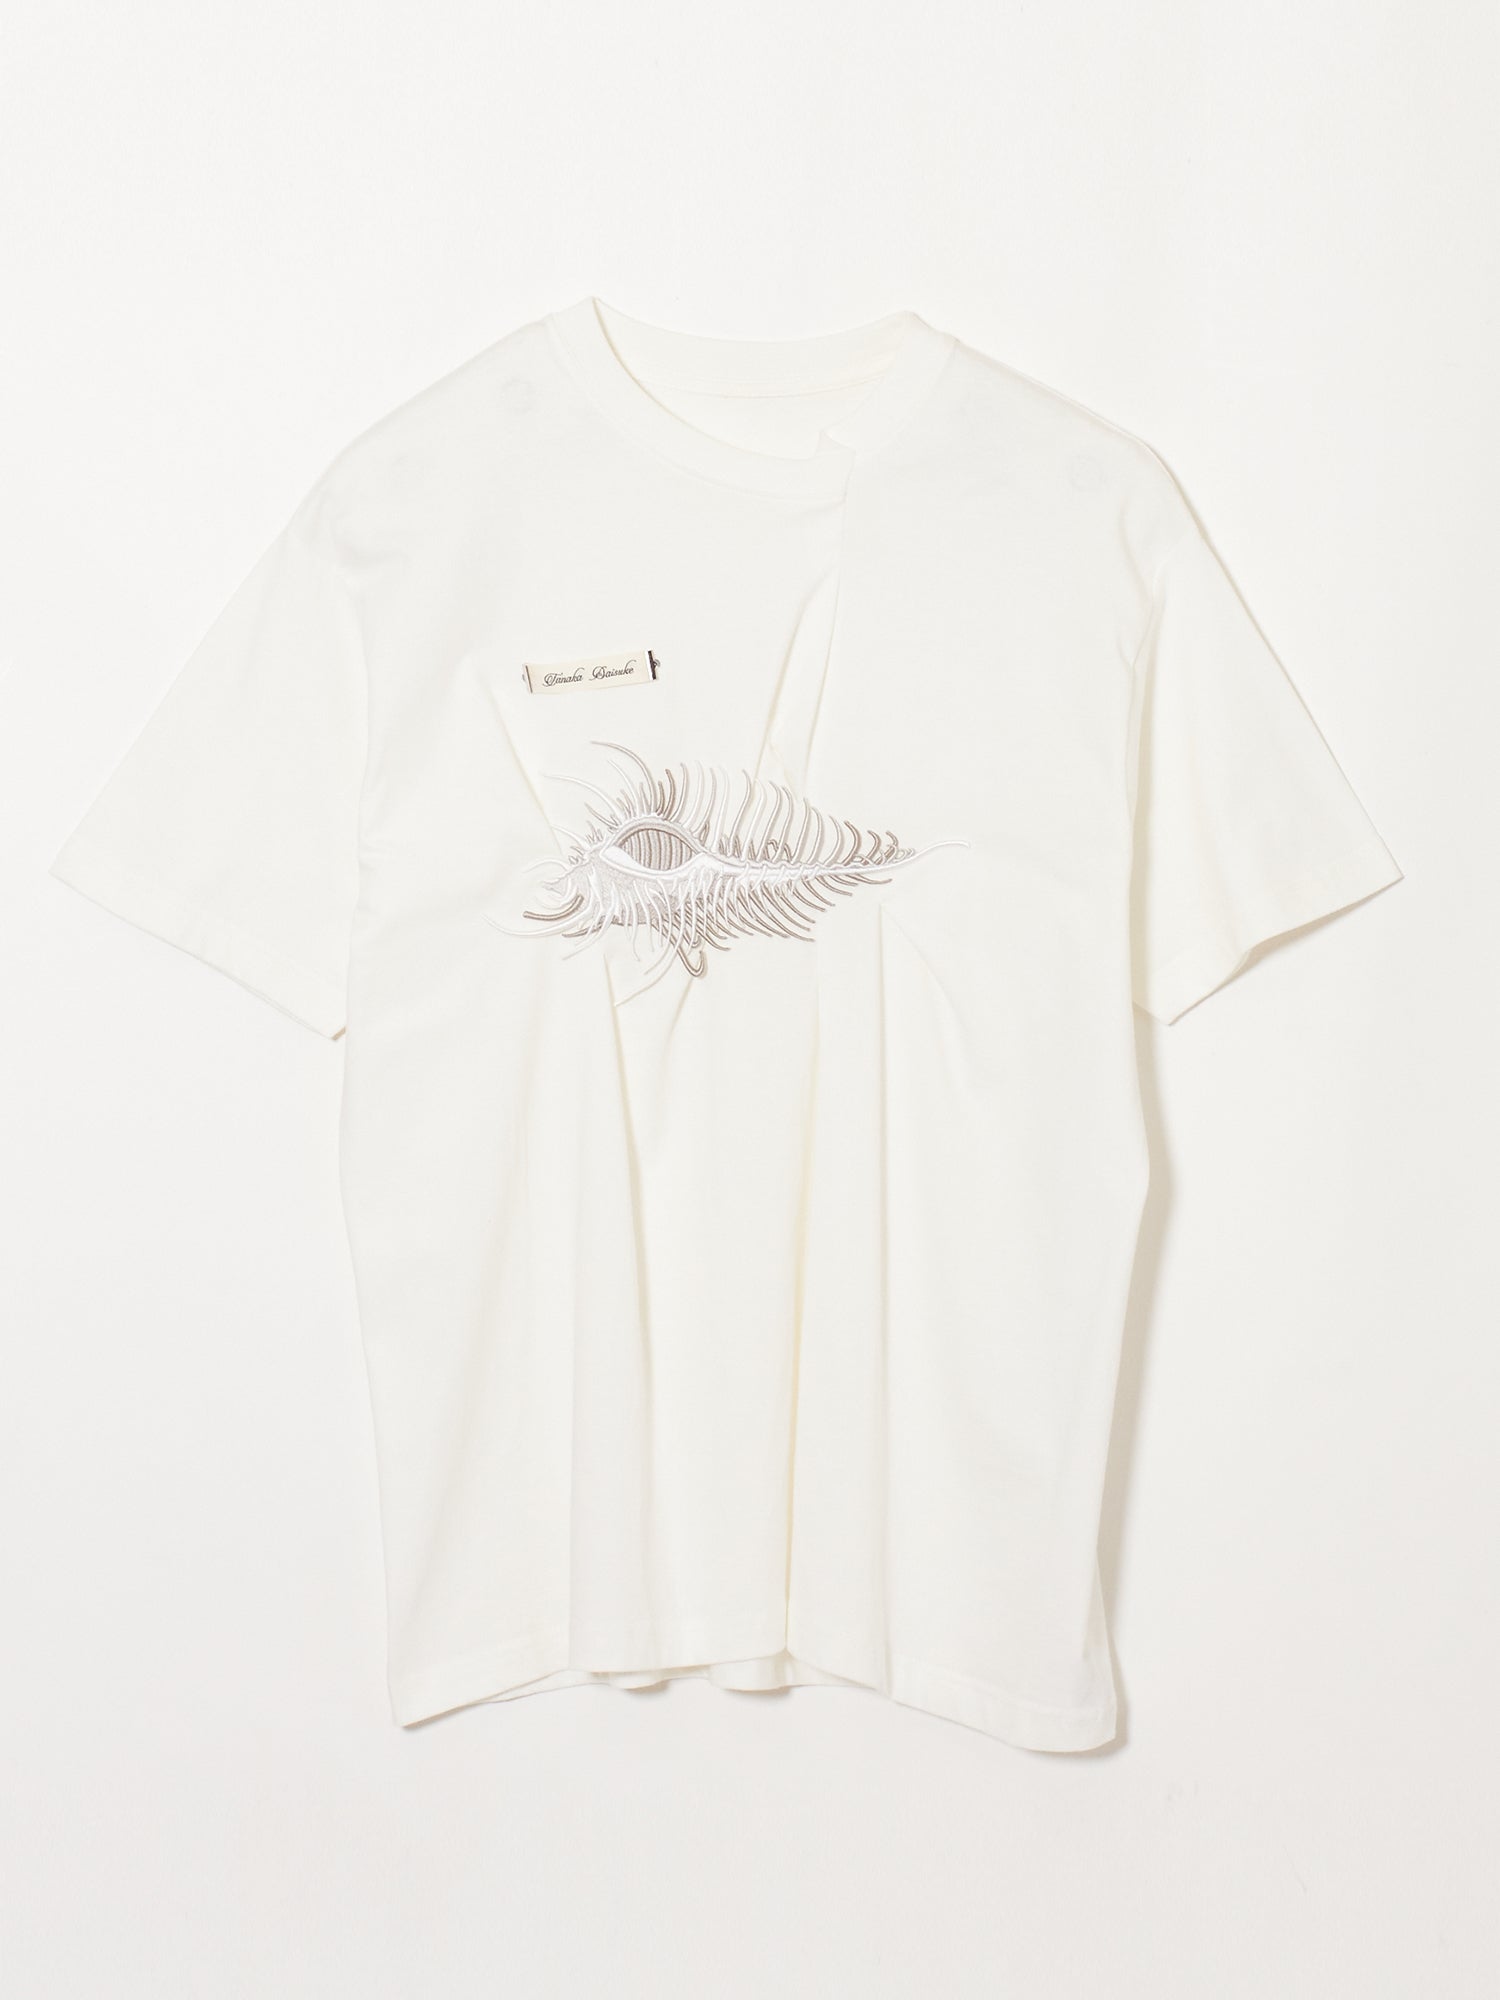 tanaka daisuke AKKIGAI Black T-shirt 01 - Tシャツ/カットソー(半袖